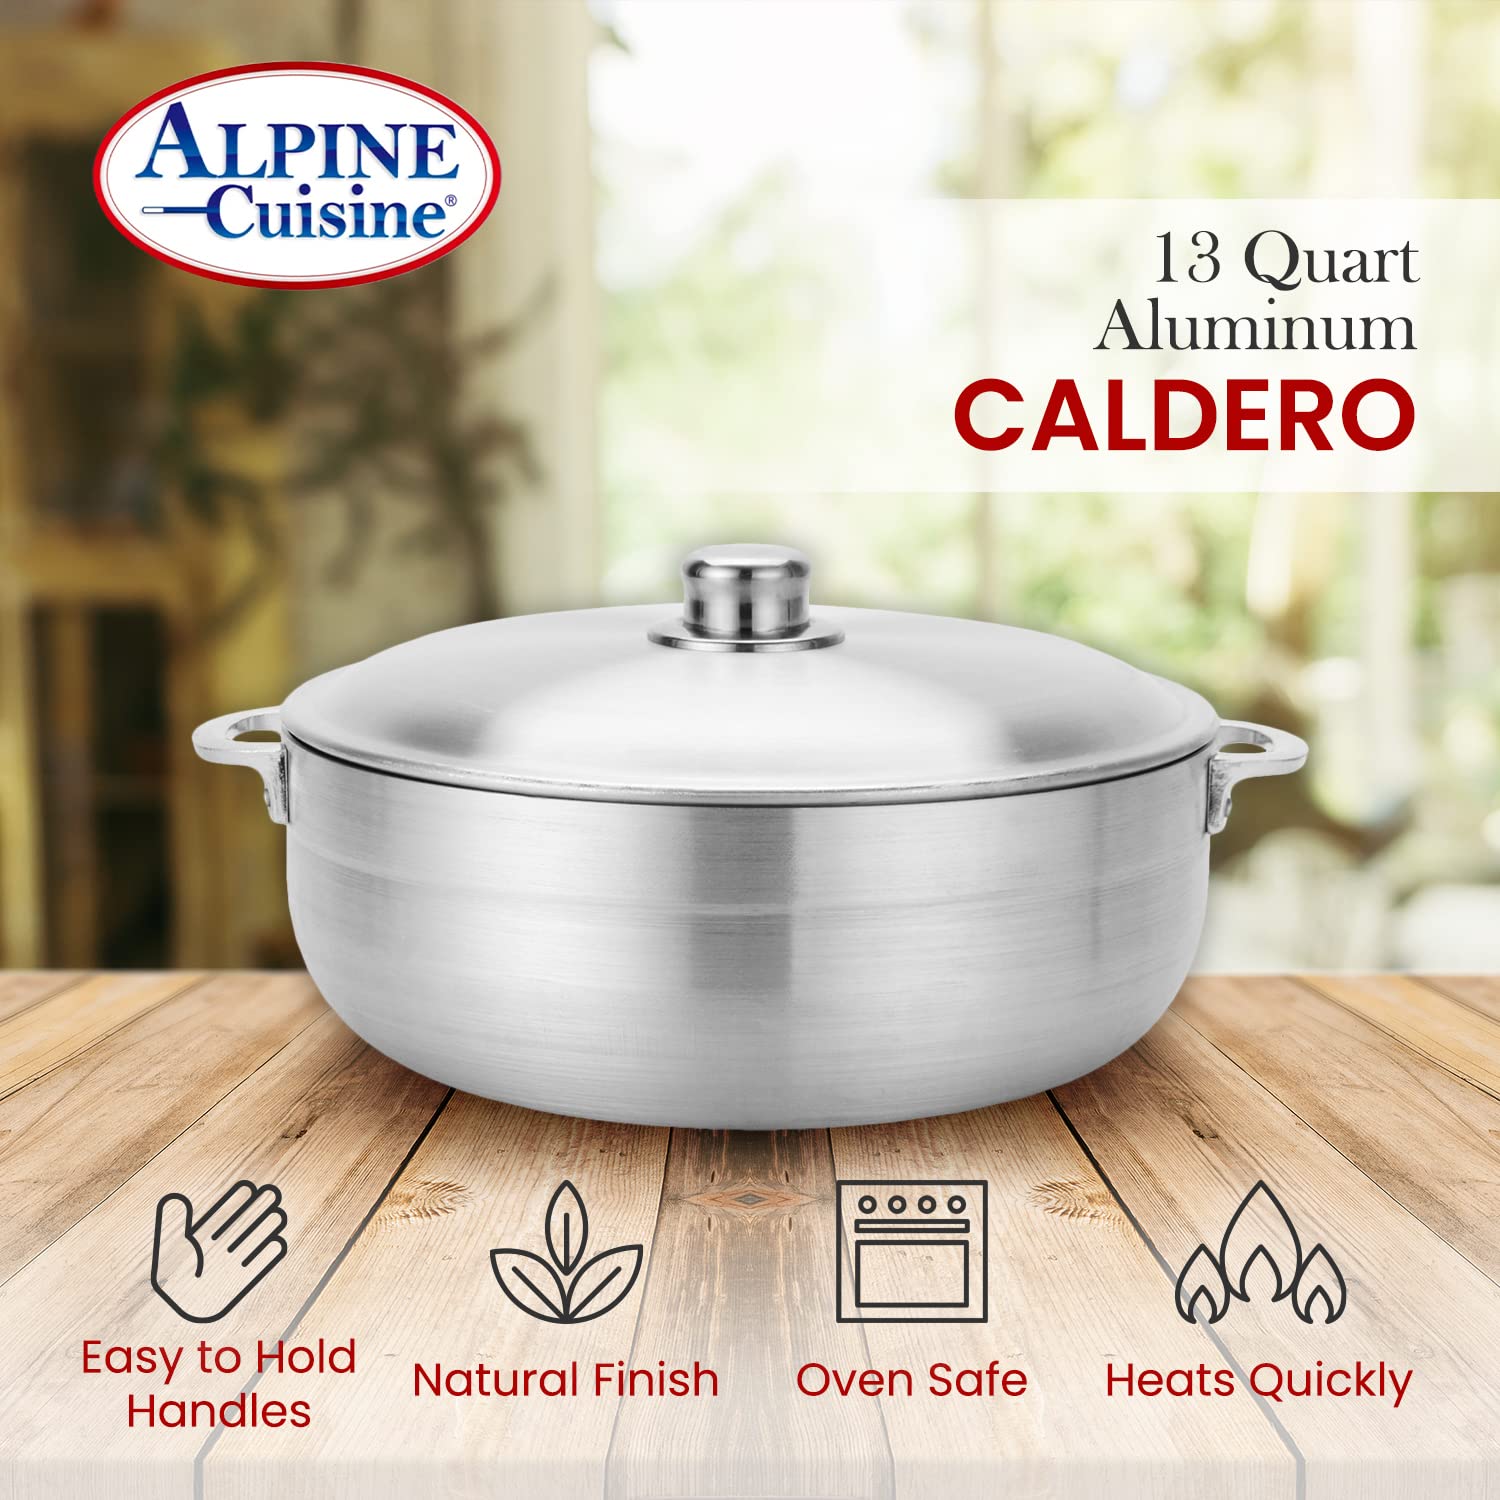 Alpine Cuisine Aramco Alpine gourmet caldero, 13-Quart, Silver